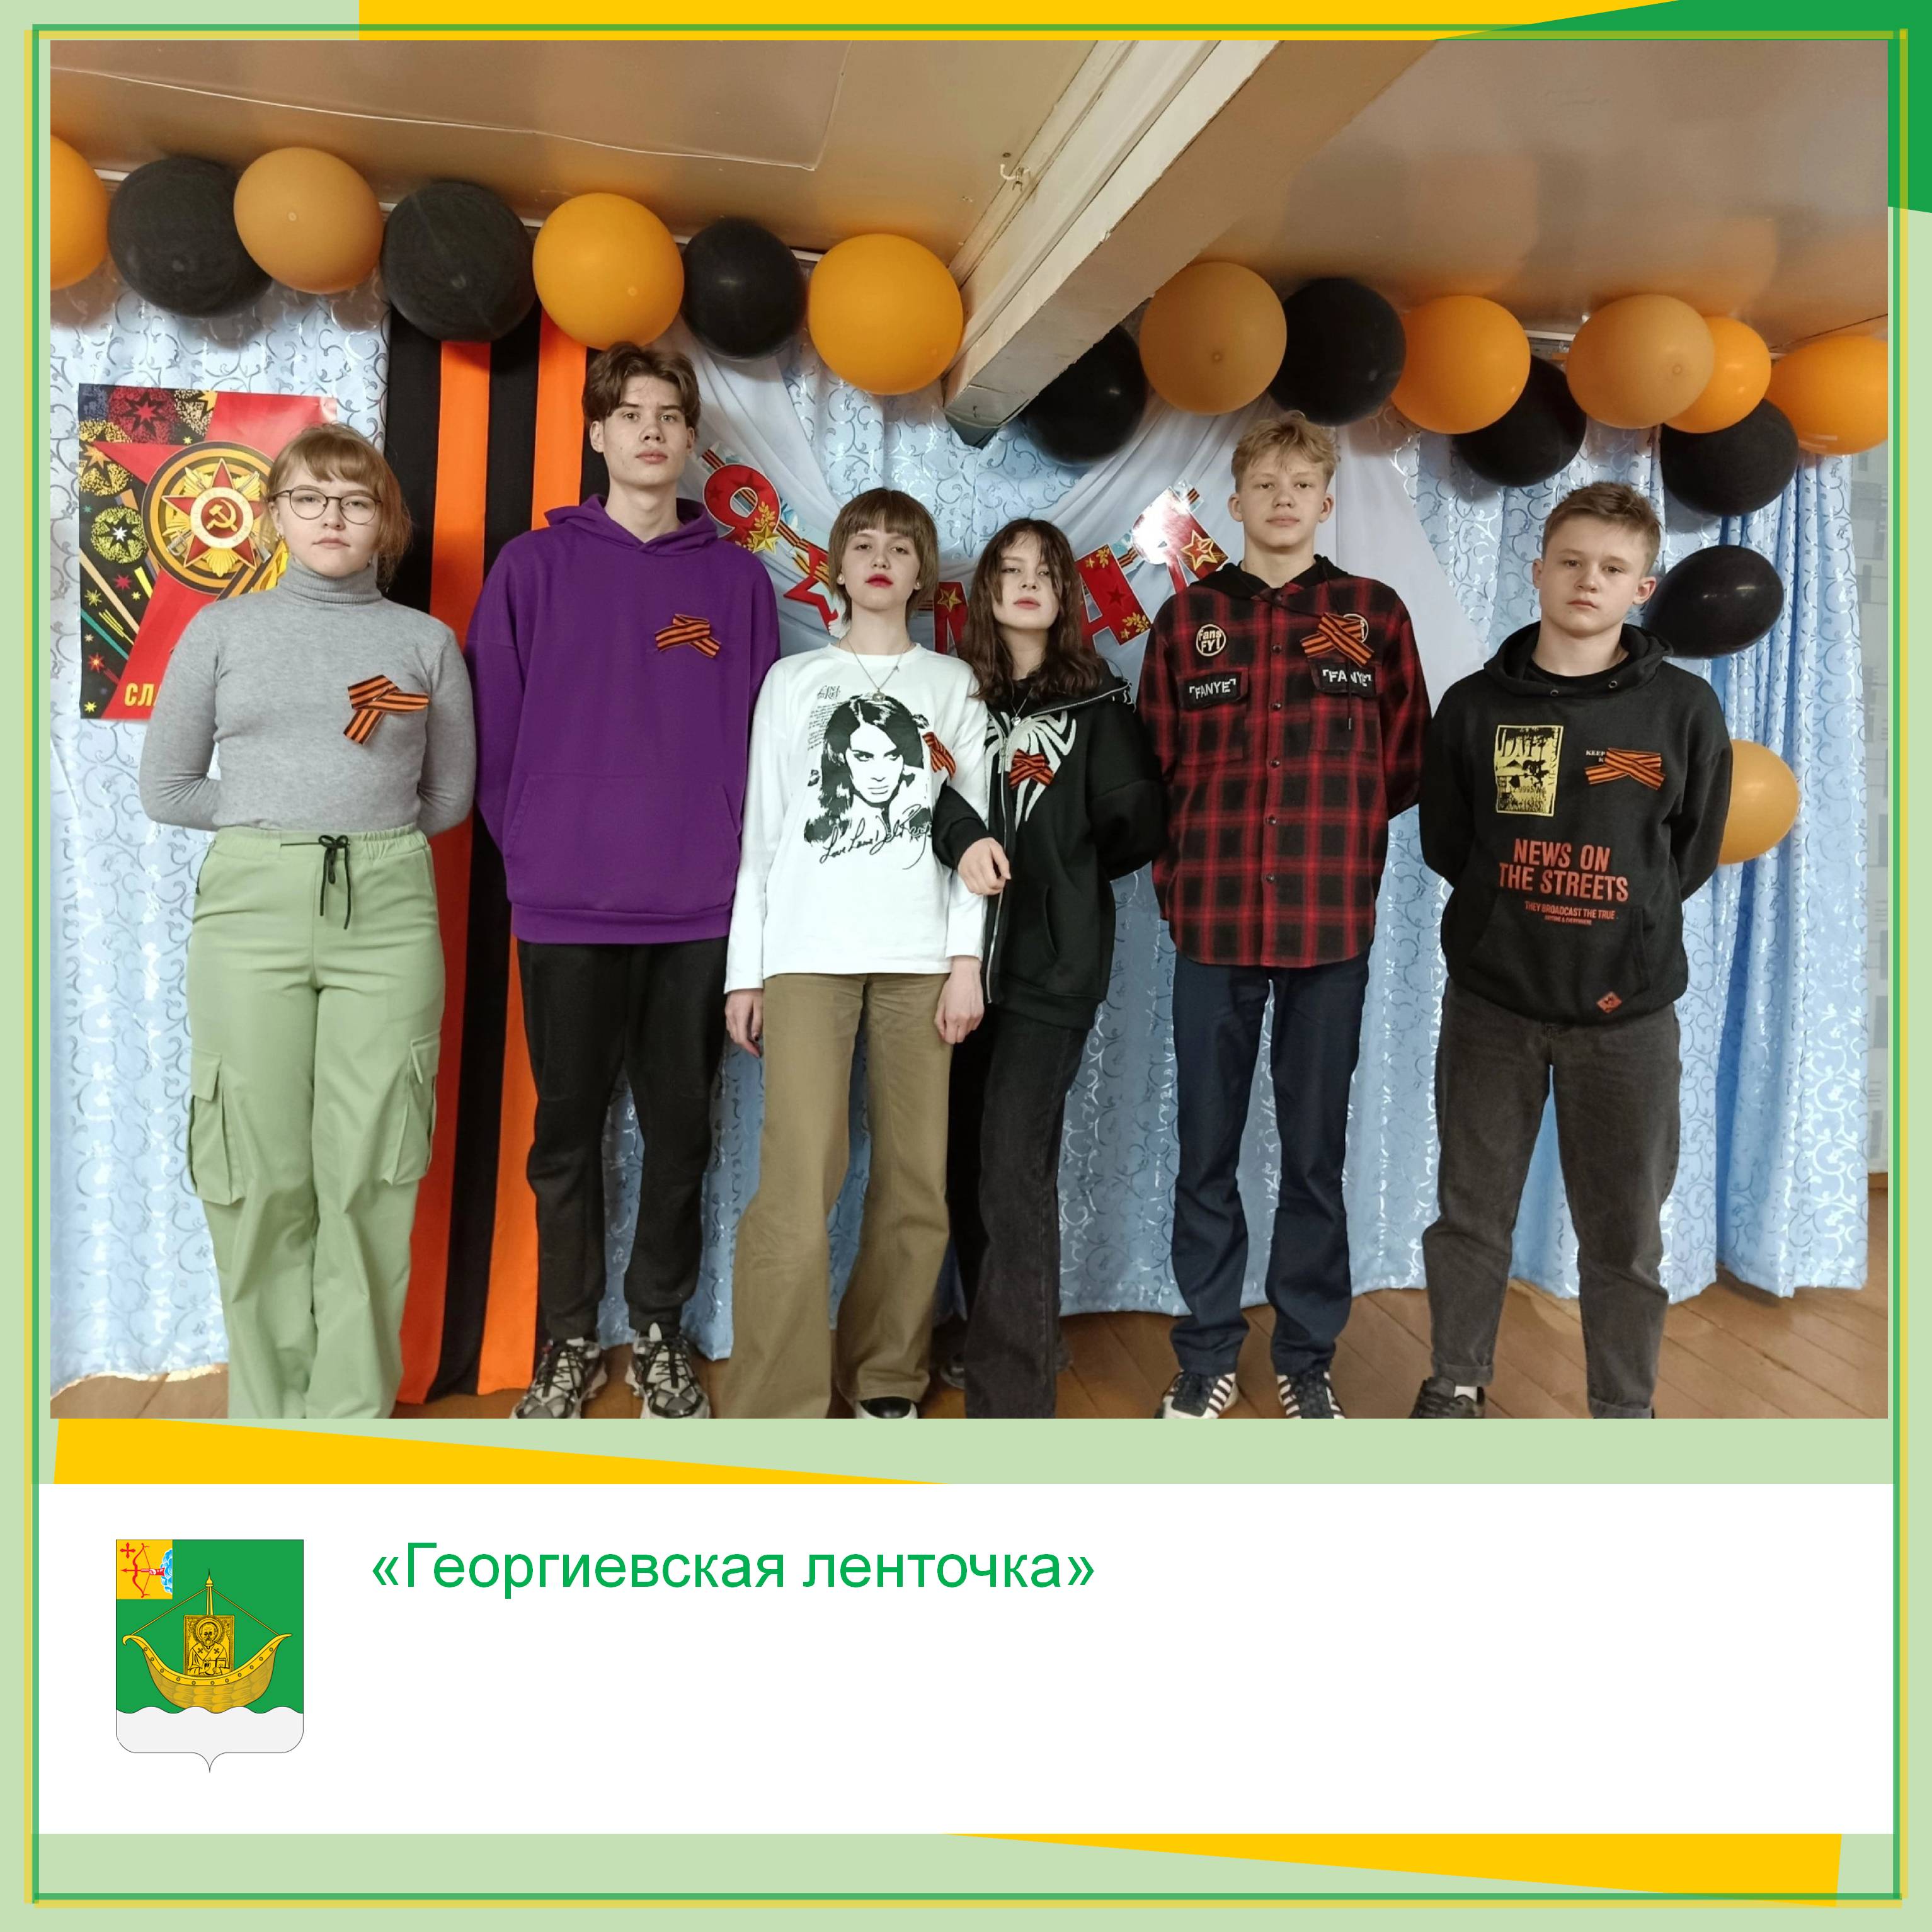 В России стартовала Всероссийская акция «Георгиевская ленточка», которая проводится ежегодно весной в преддверии Дня Победы.